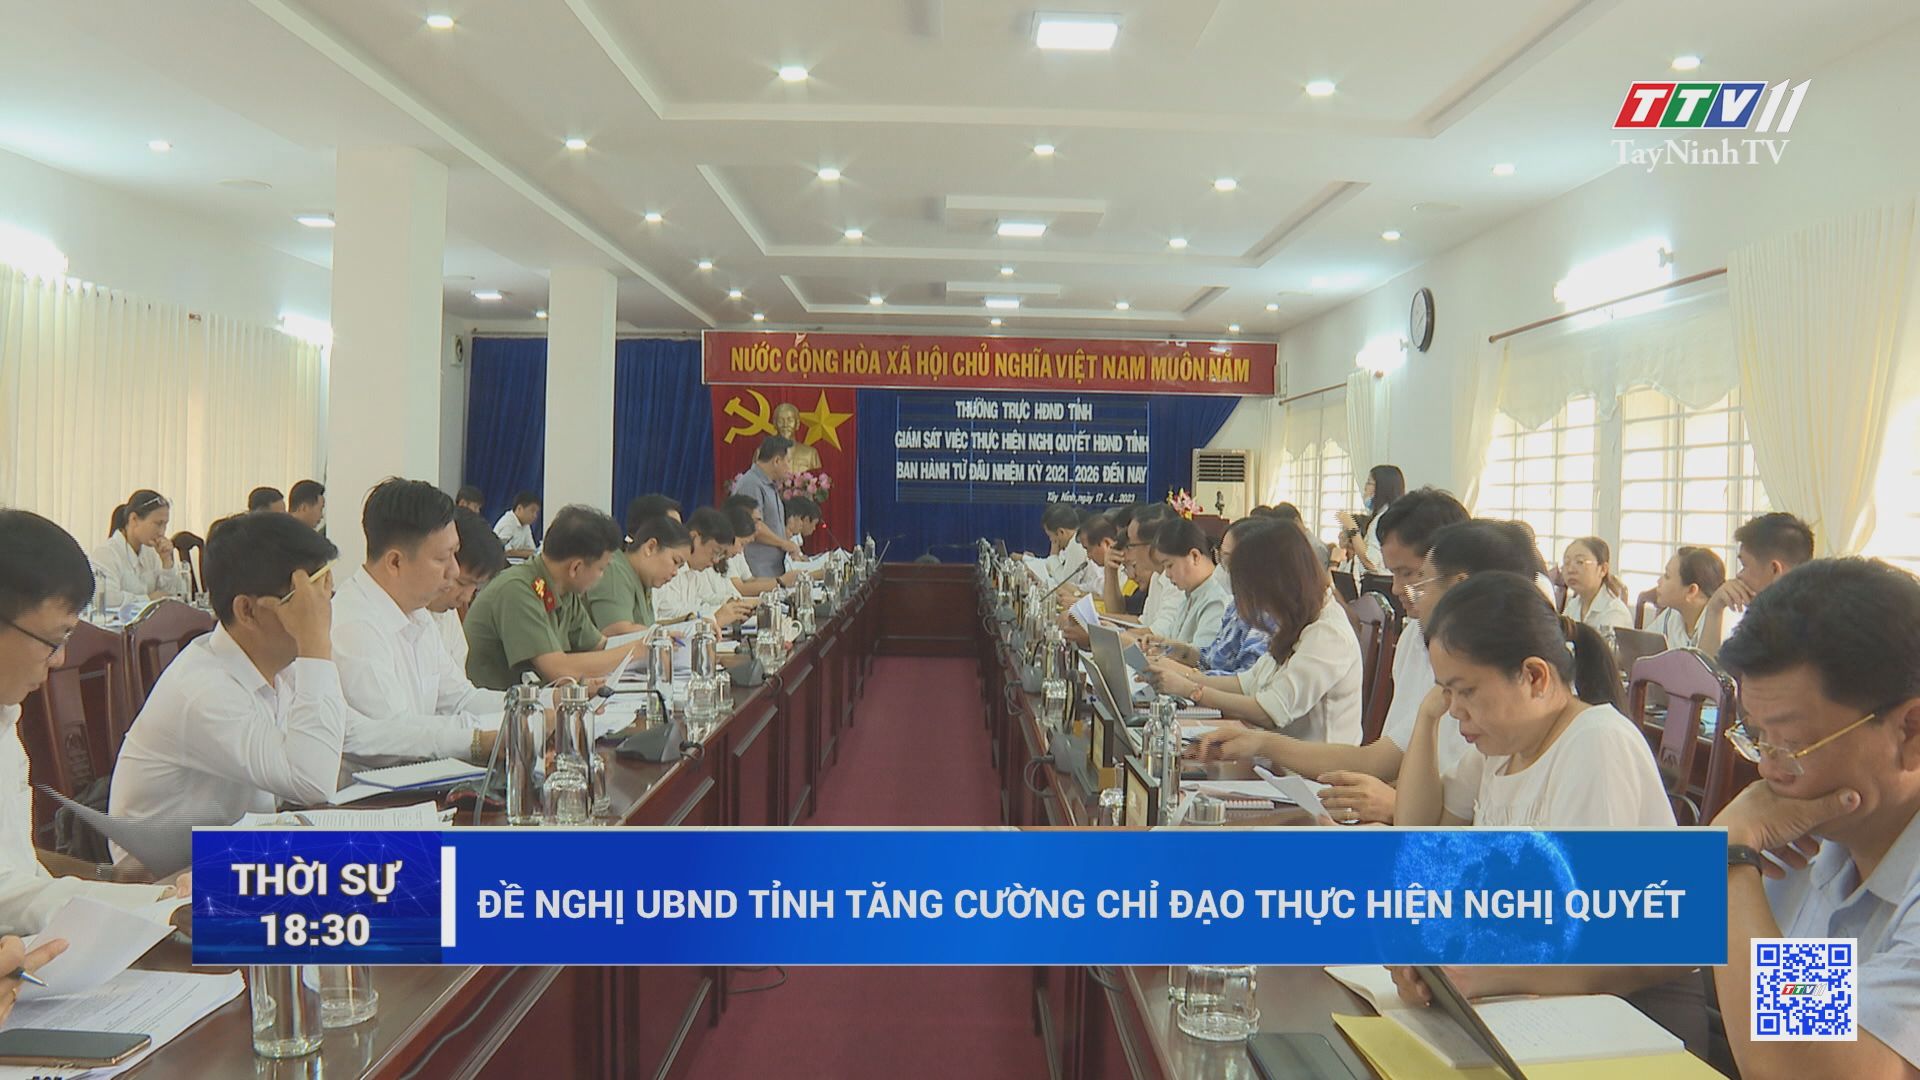 Đề nghị UBND tỉnh tăng cường chỉ đạo thực hiện nghị quyết | TayNinhTV